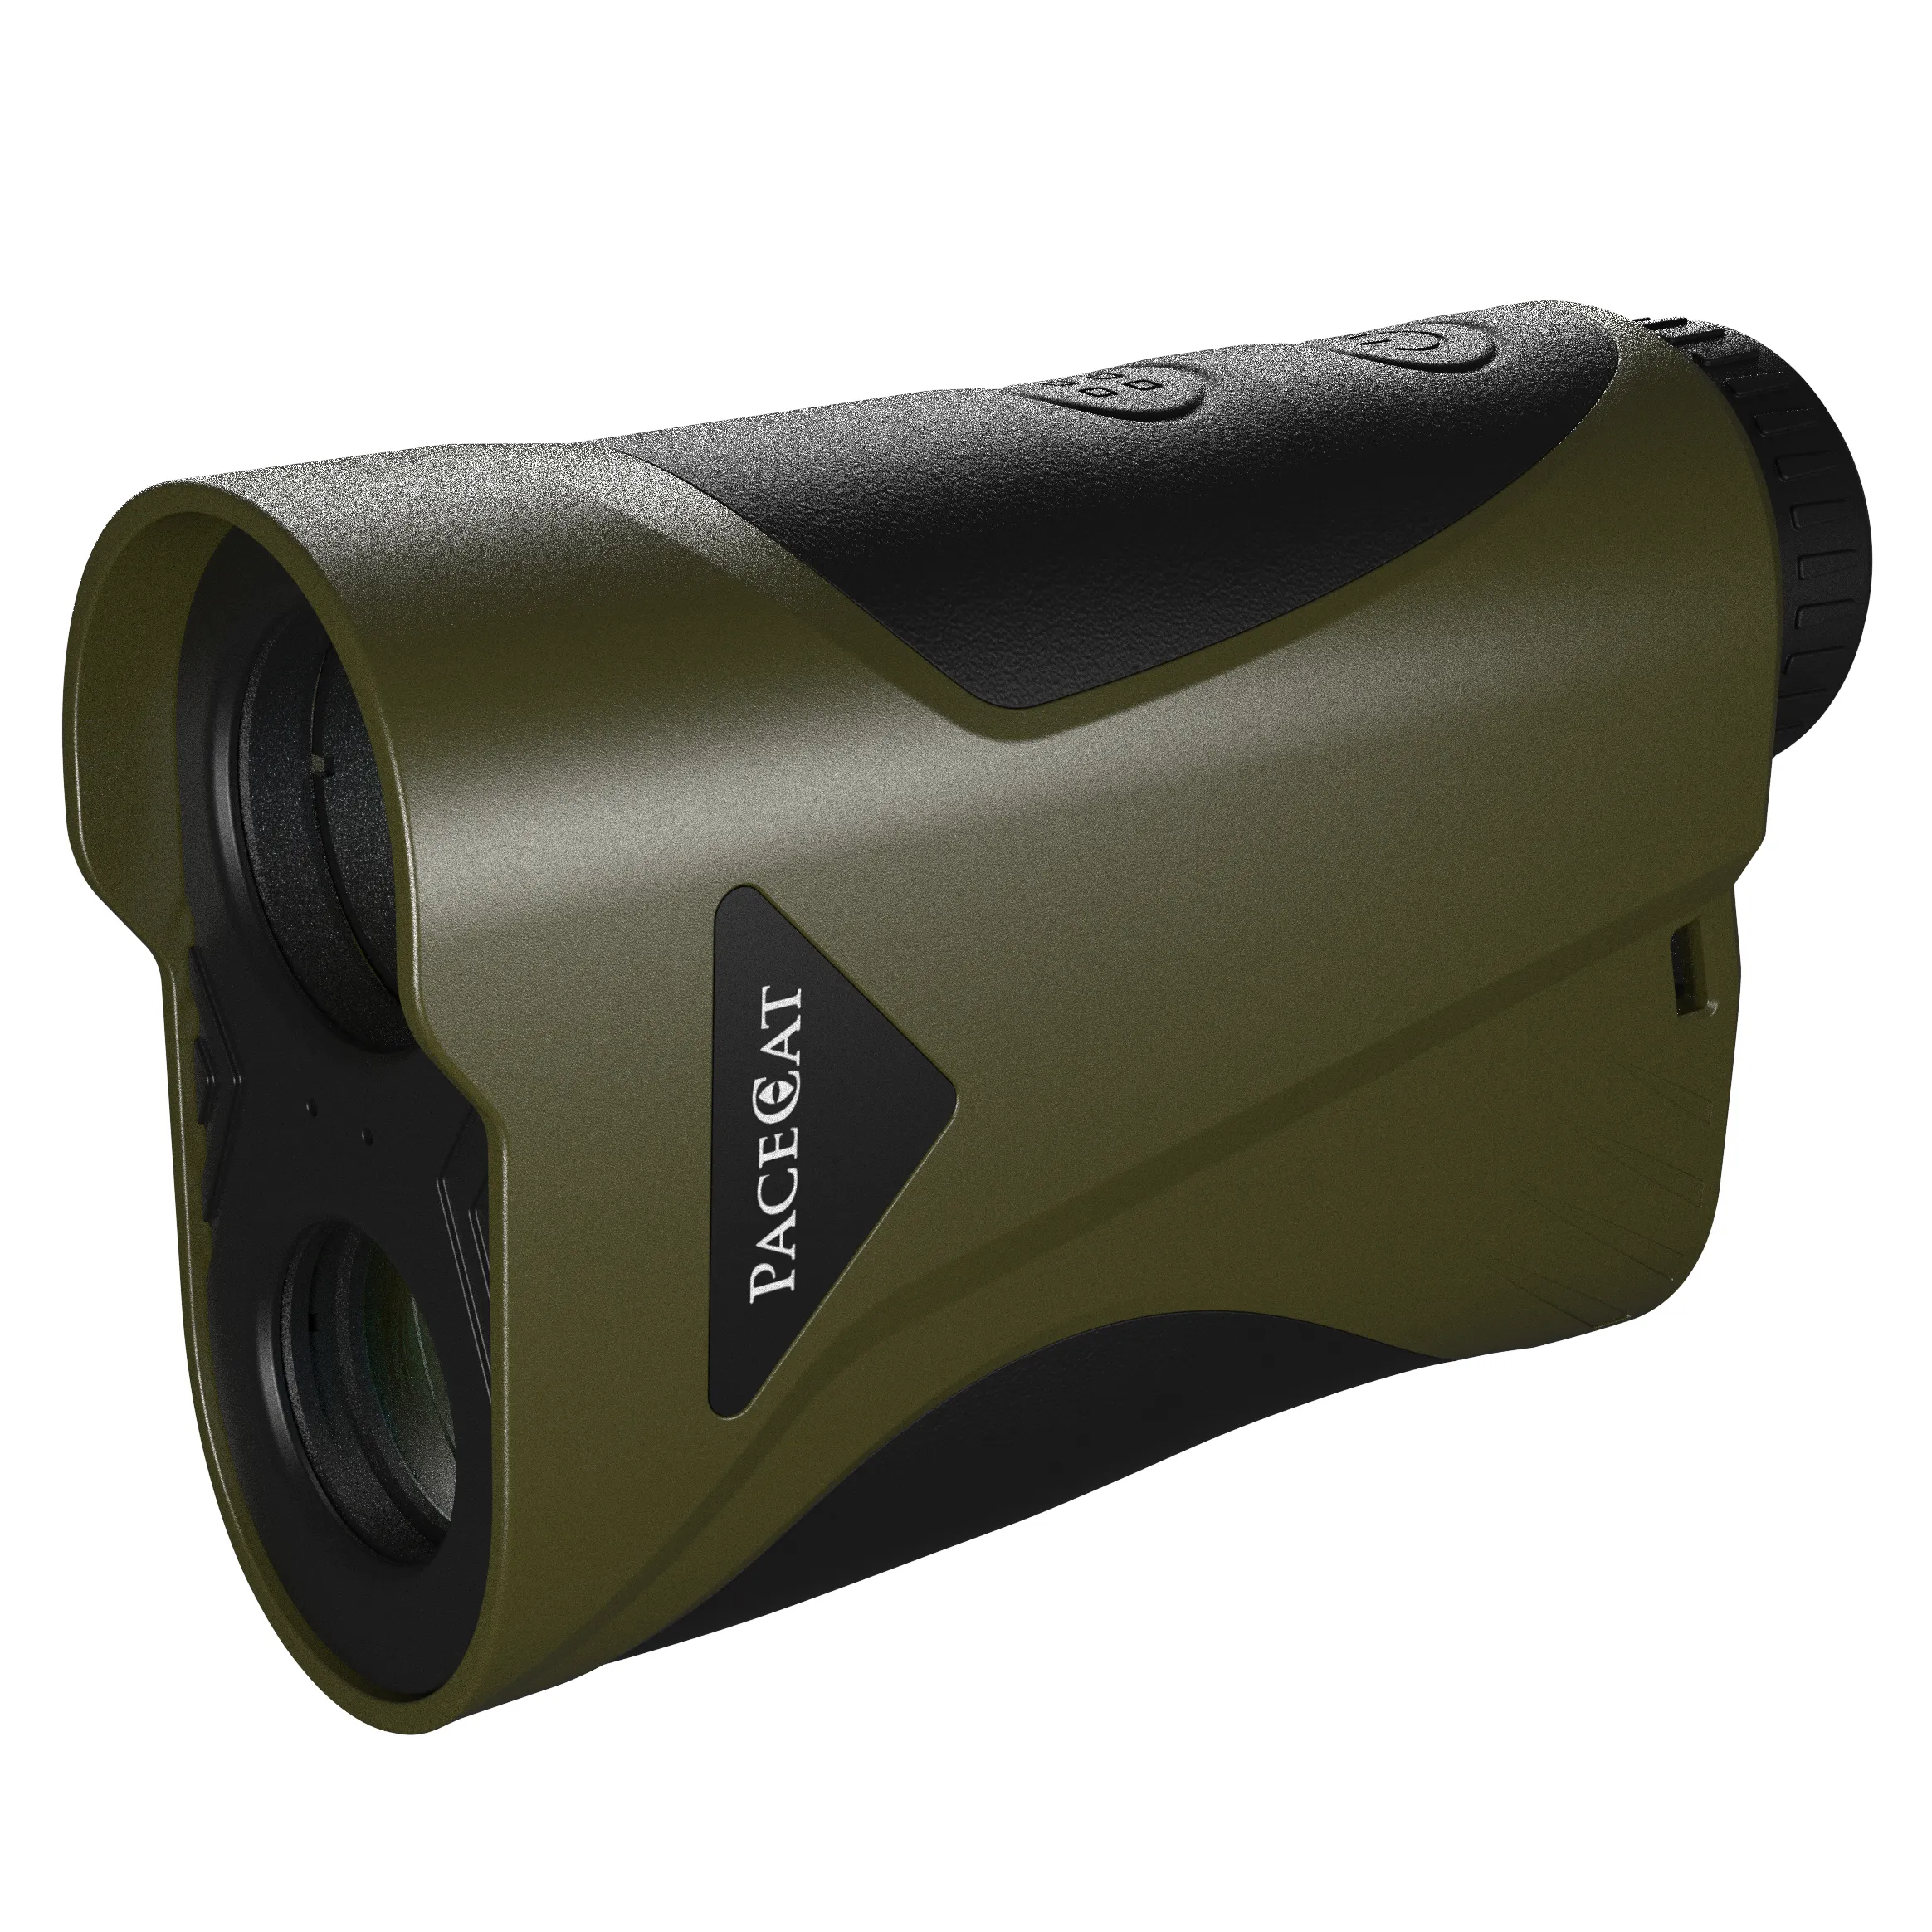 Pacecat night use shooting max 2000Y hunting laser rangefinder